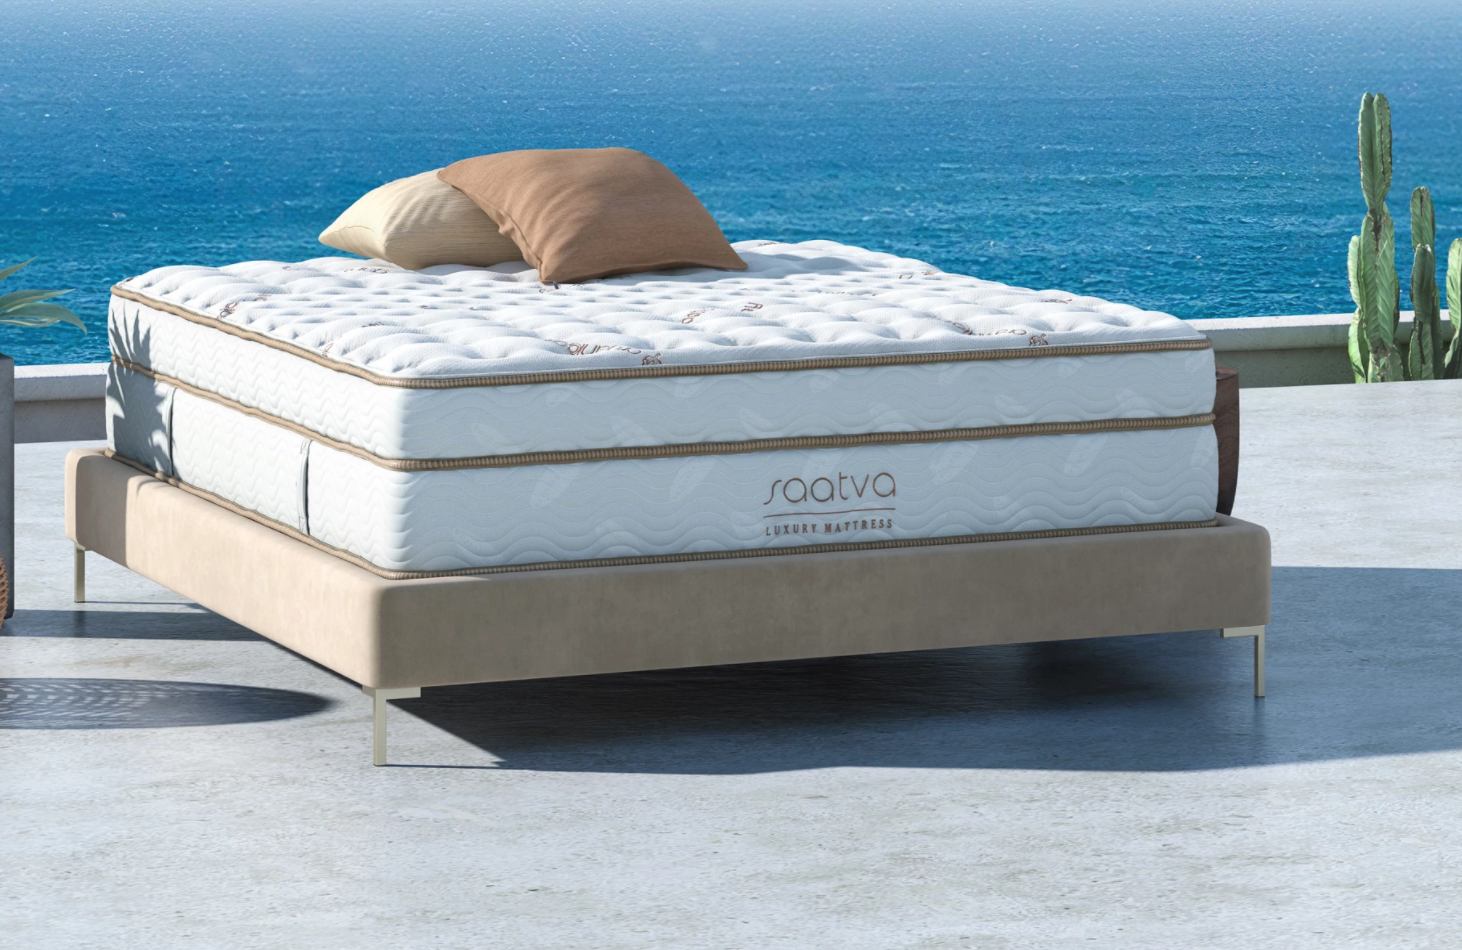 saatva hybrid mattress amazon